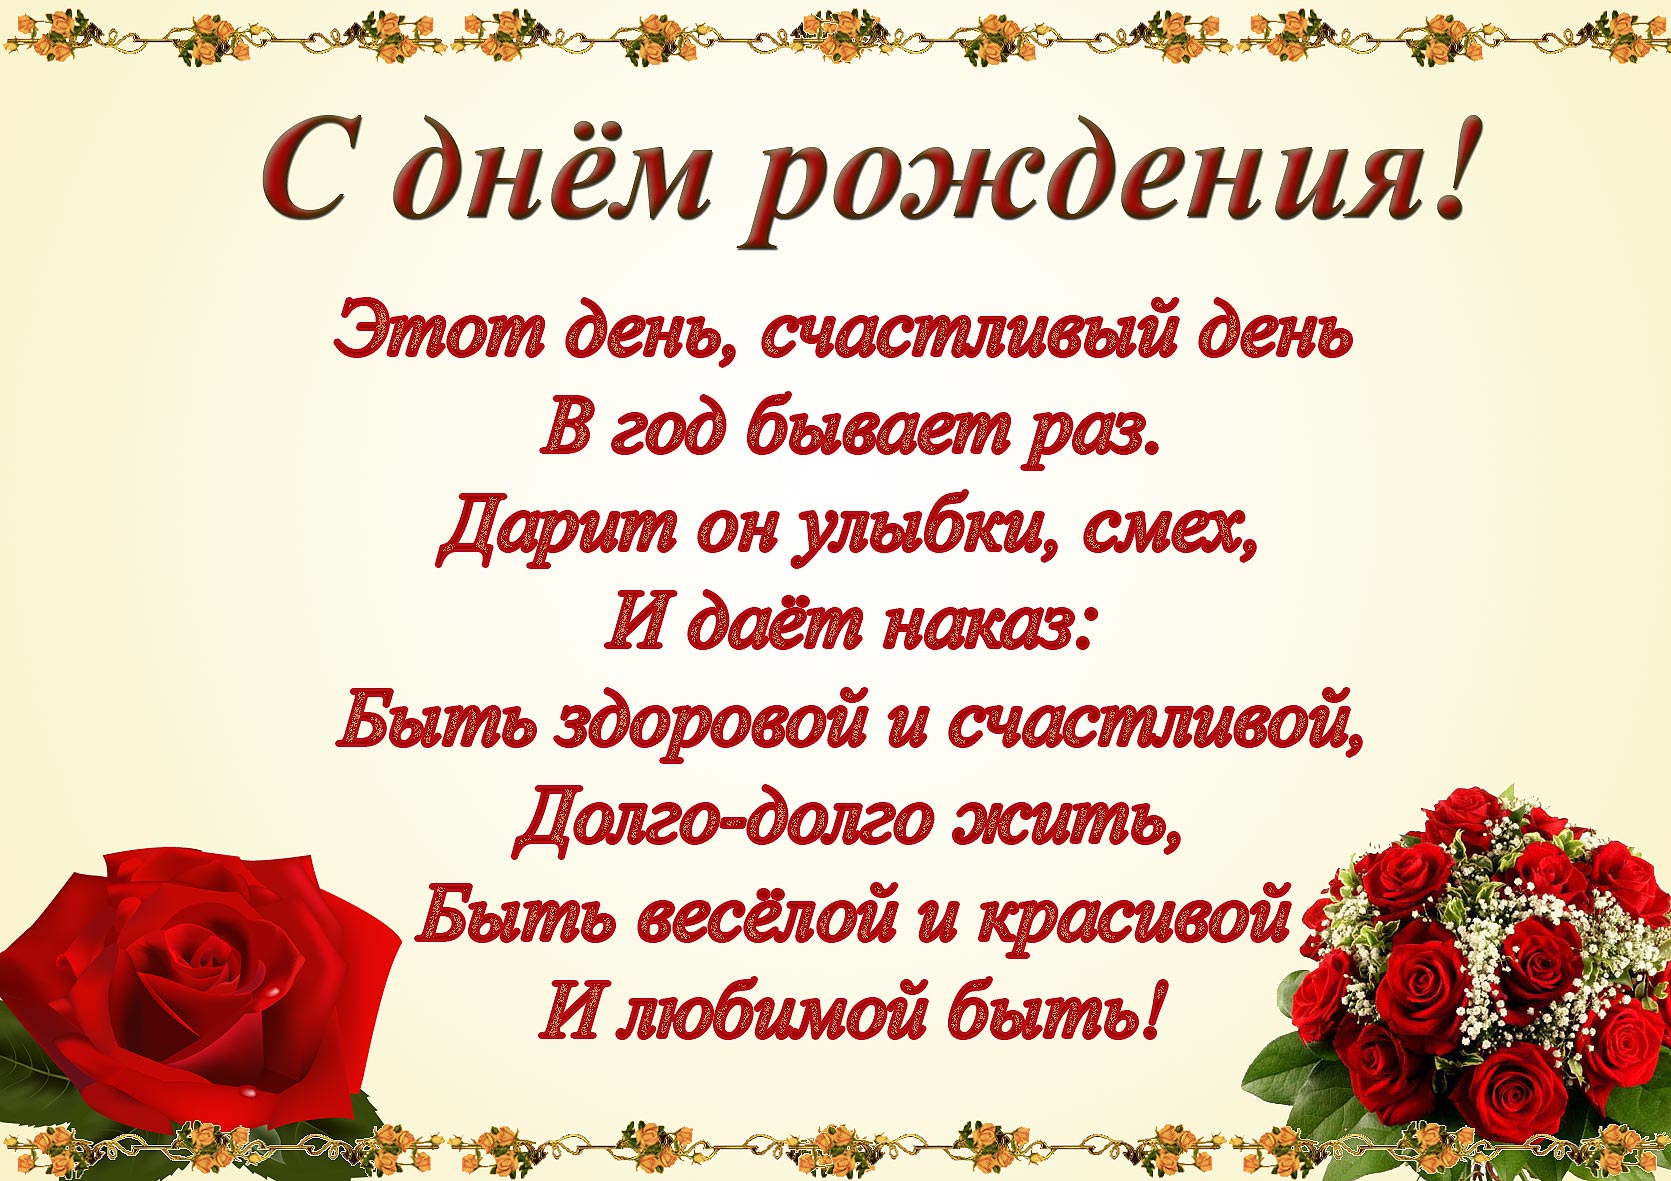 http://i46.fastpic.ru/big/2013/0530/a4/184d7646641c793a67a4e49ede62b0a4.jpg